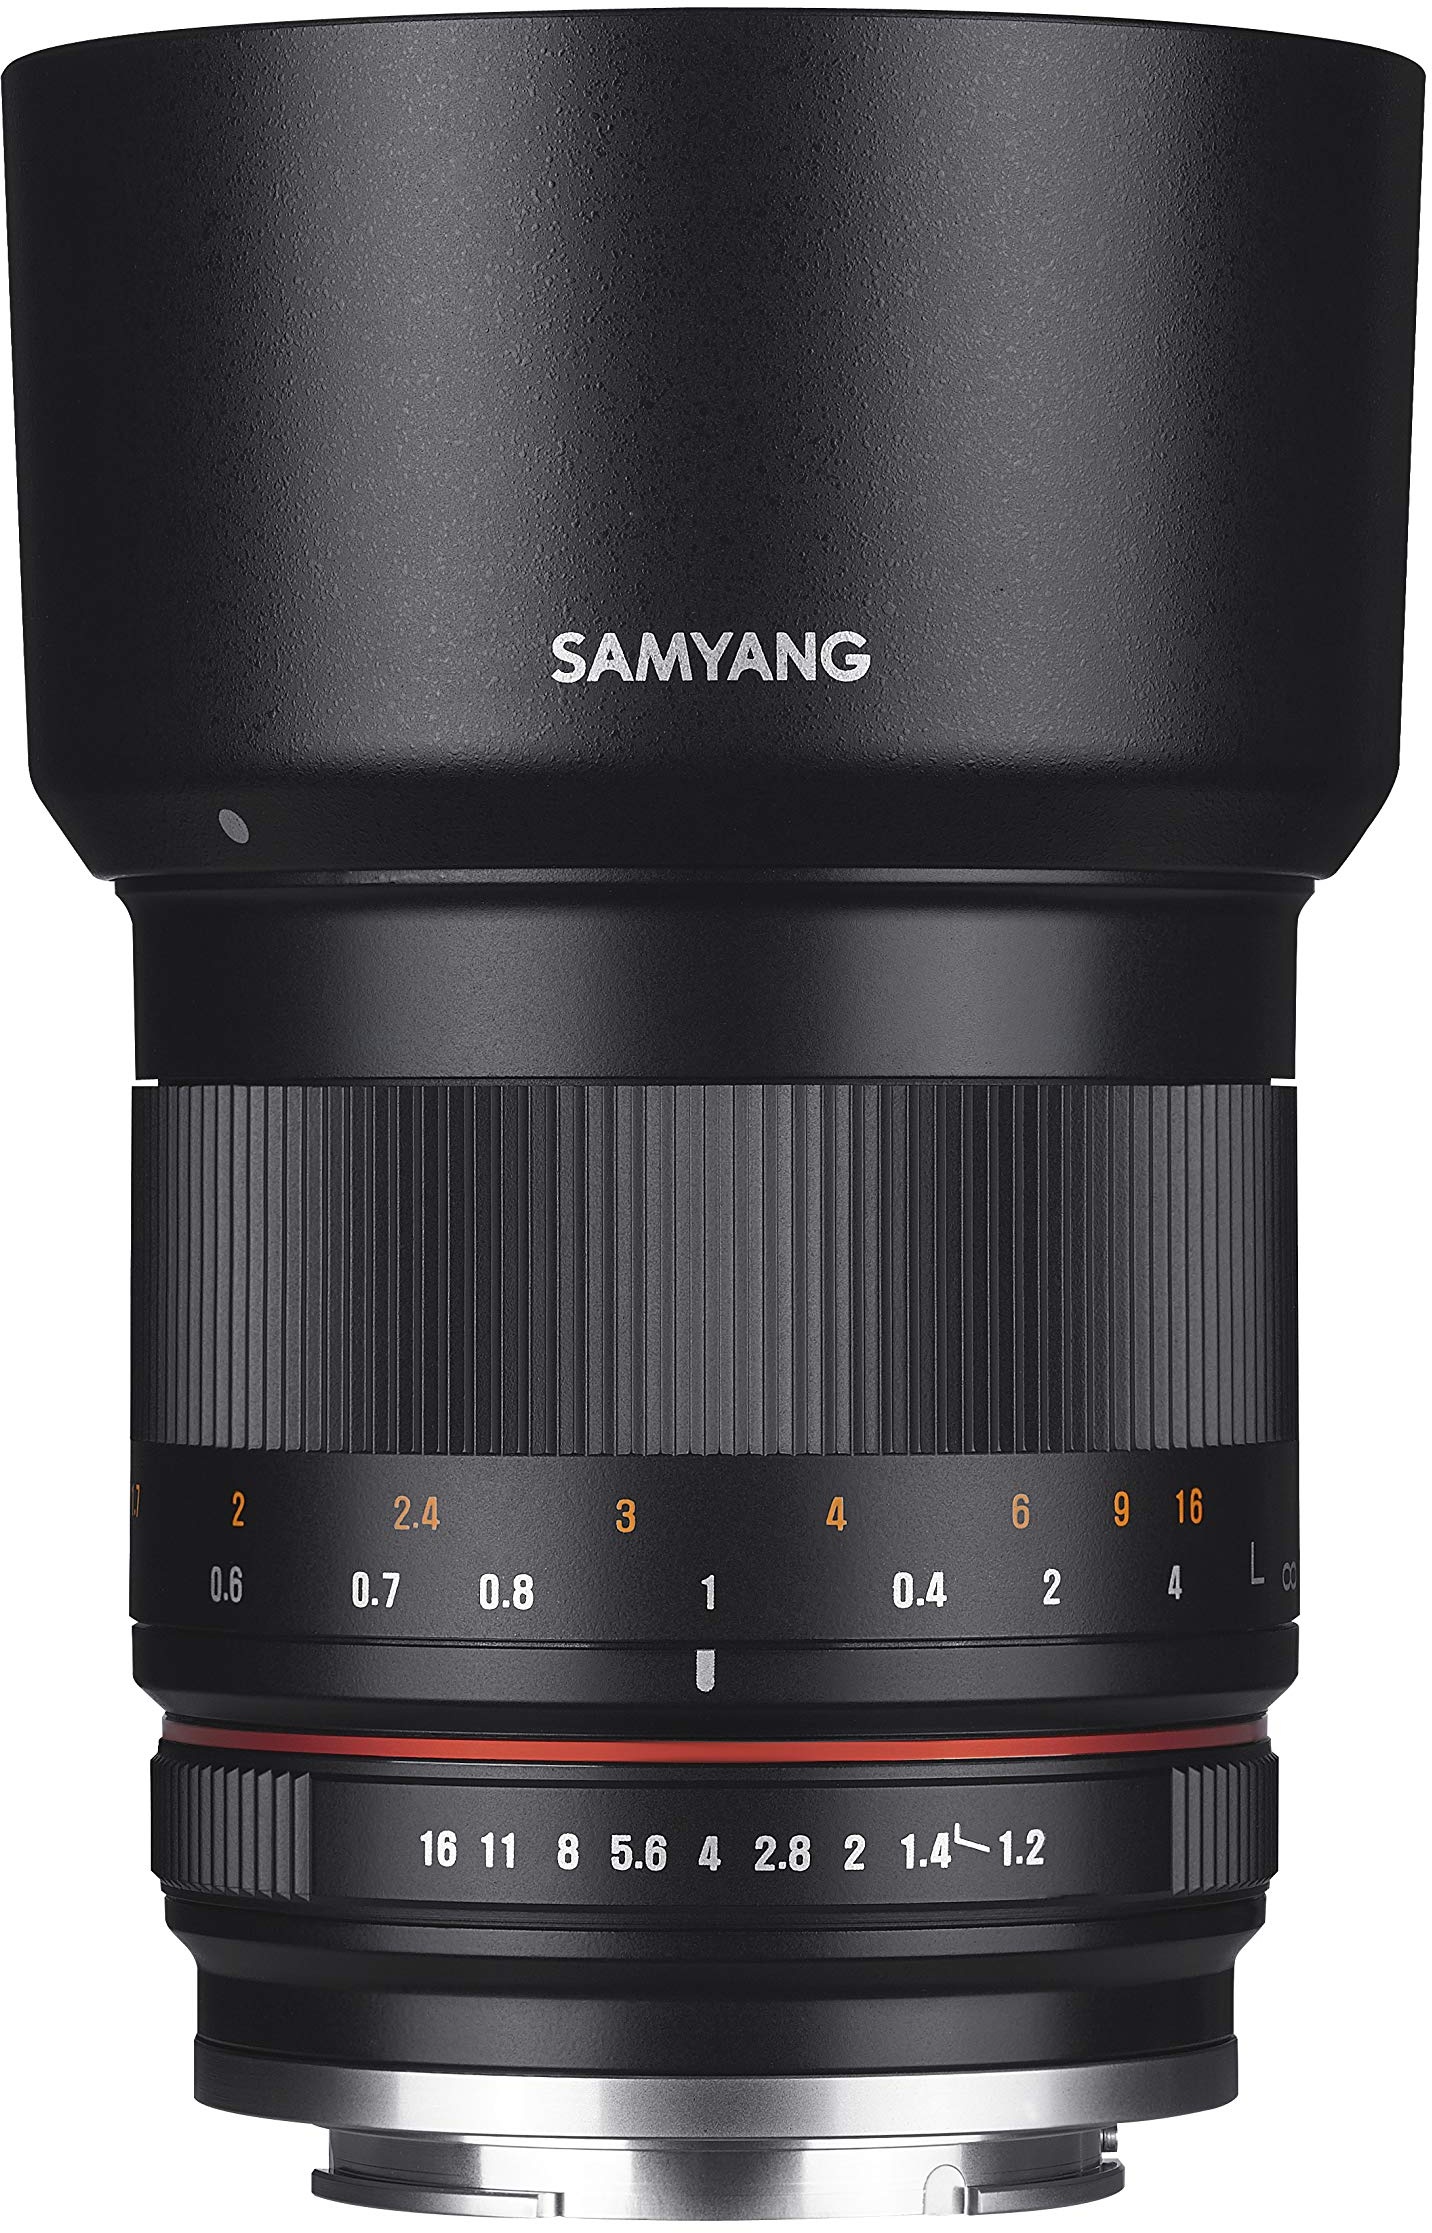 Samyang MF 50mm F1.2 APS-C MFT schwarz - manuelles Foto Objektiv mit 50mm Festbrennweite für MFT Kameras (Olympus / Panasonic), ideal für Portrait, sanftes Bokeh, kompakt und leicht